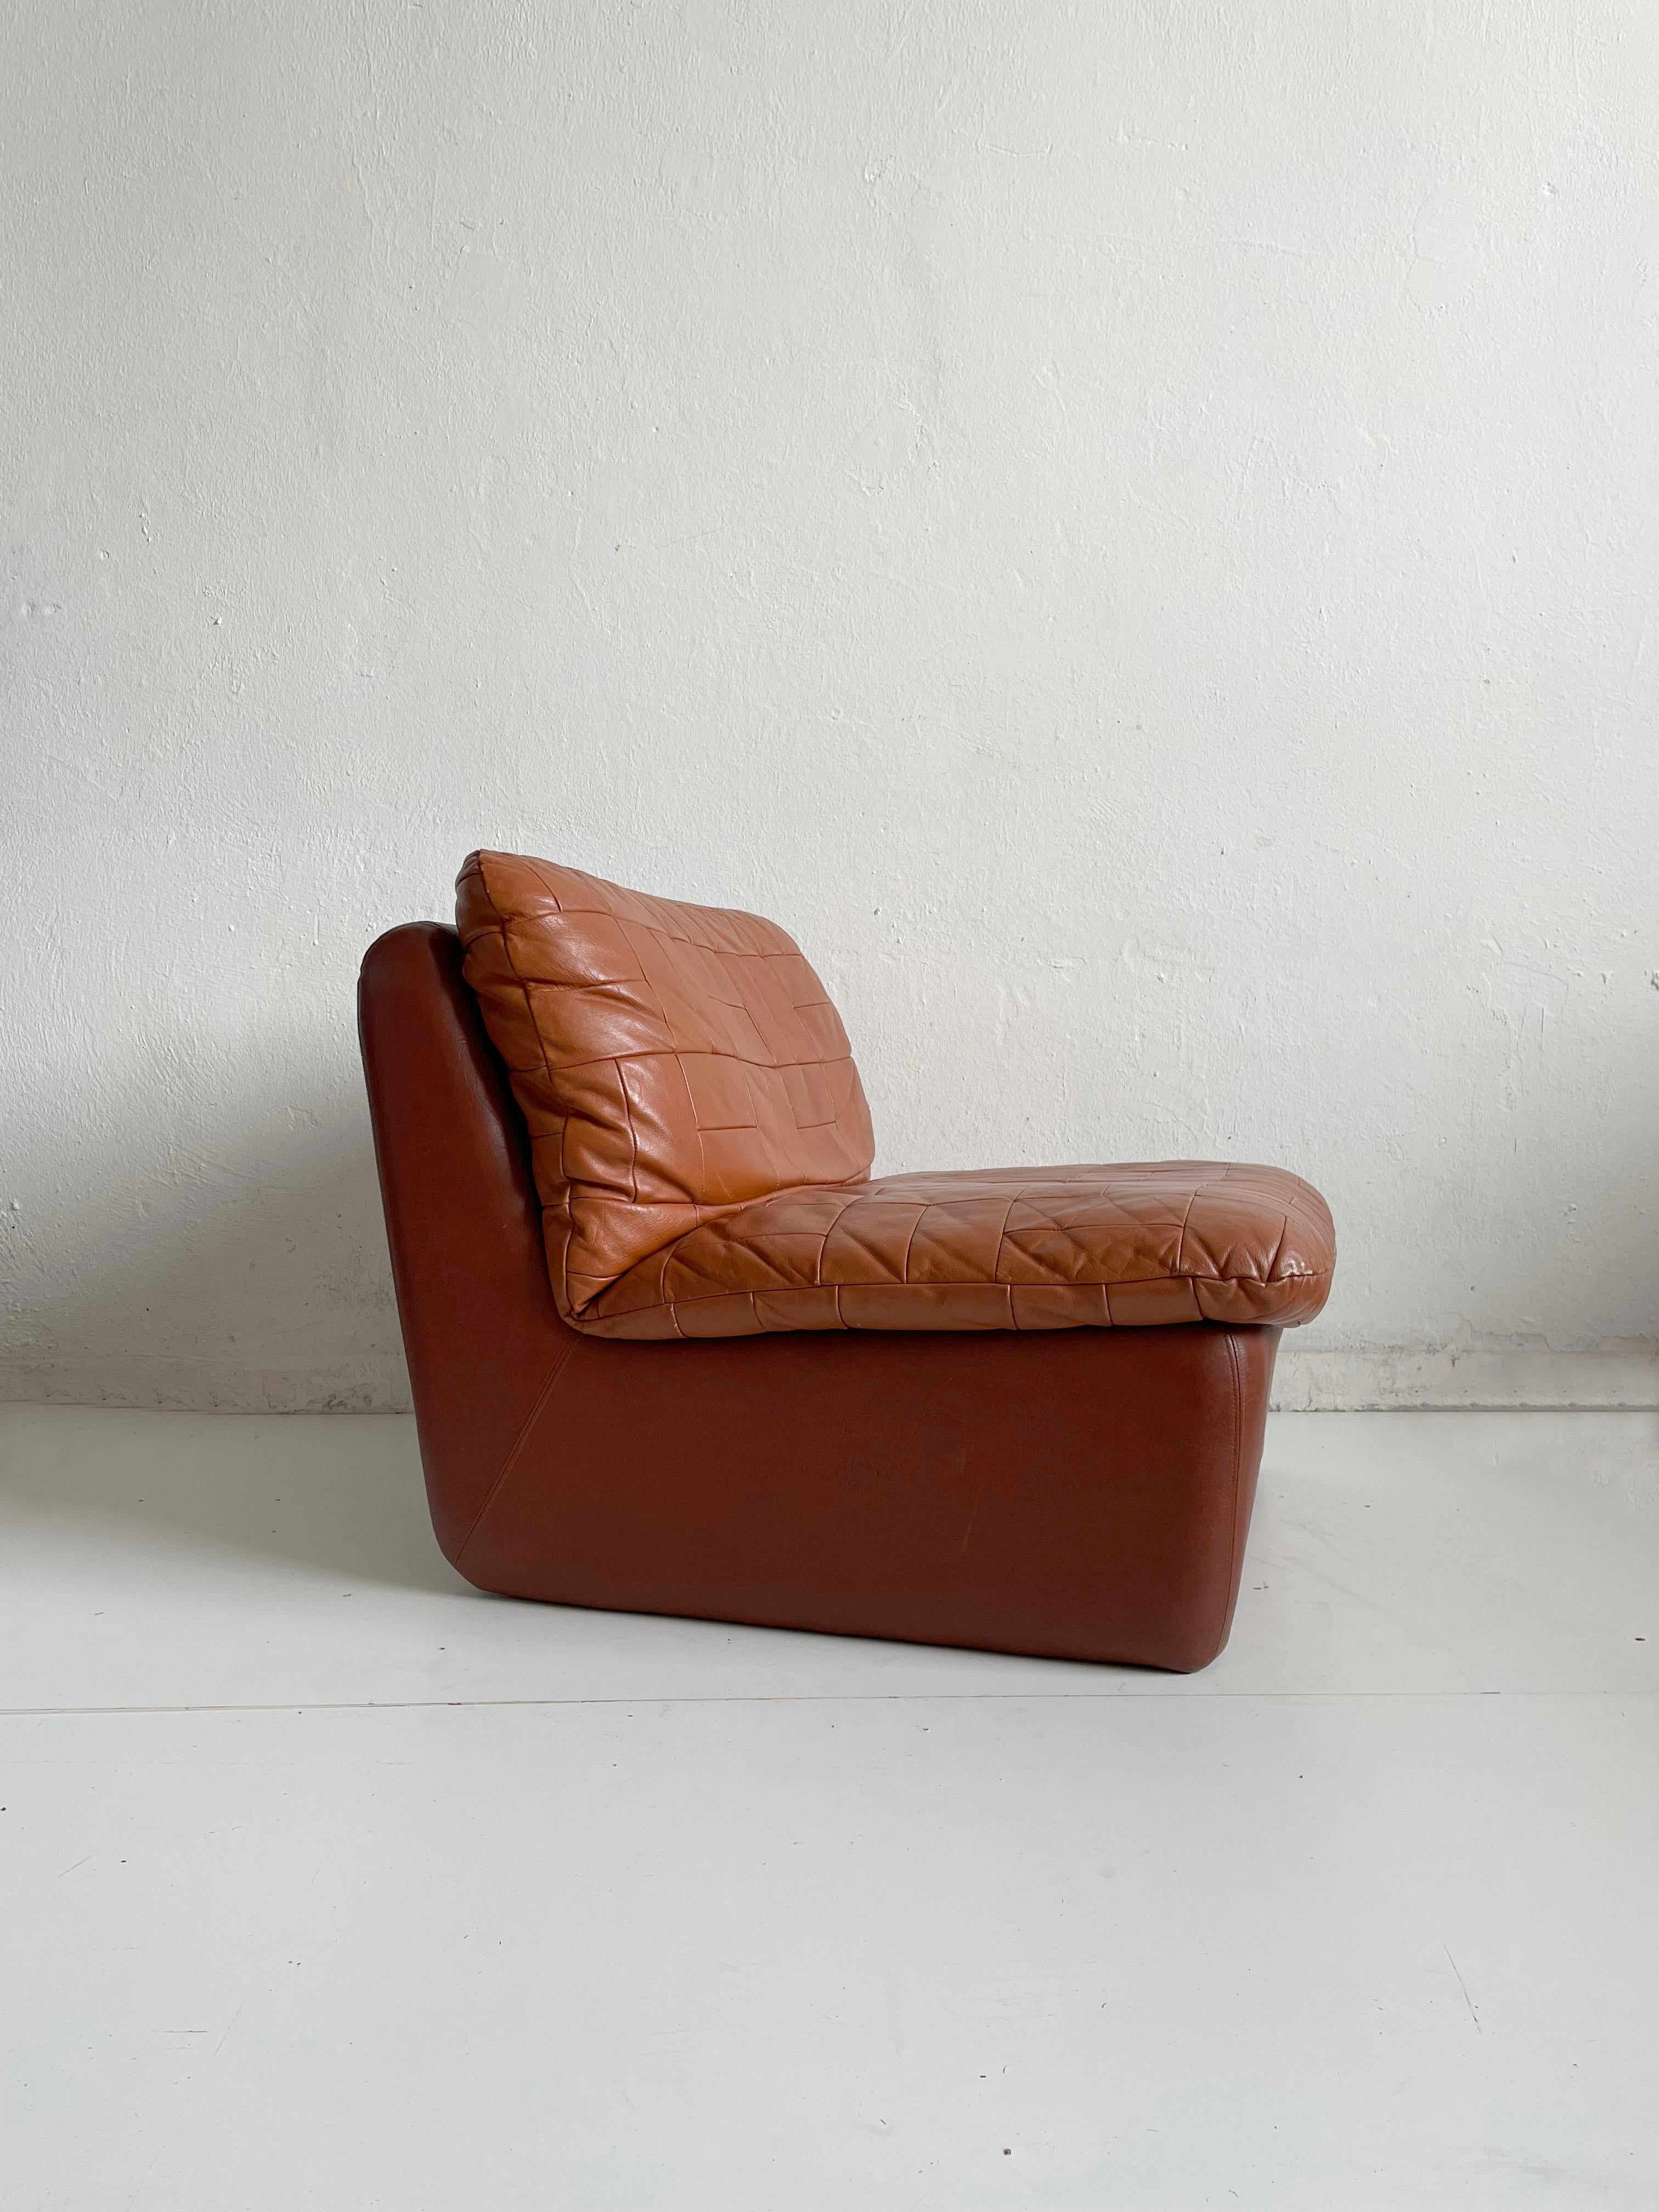 Vieux fauteuil de salon en cuir fabriqué par Overman de Suède (vers le début des années 1970). Composé d'un siège en cuir patchwork cousu à un cadre en vinyle brun caramel. 
Cuir d'origine souple et doux avec une belle patine et un bel âge avec